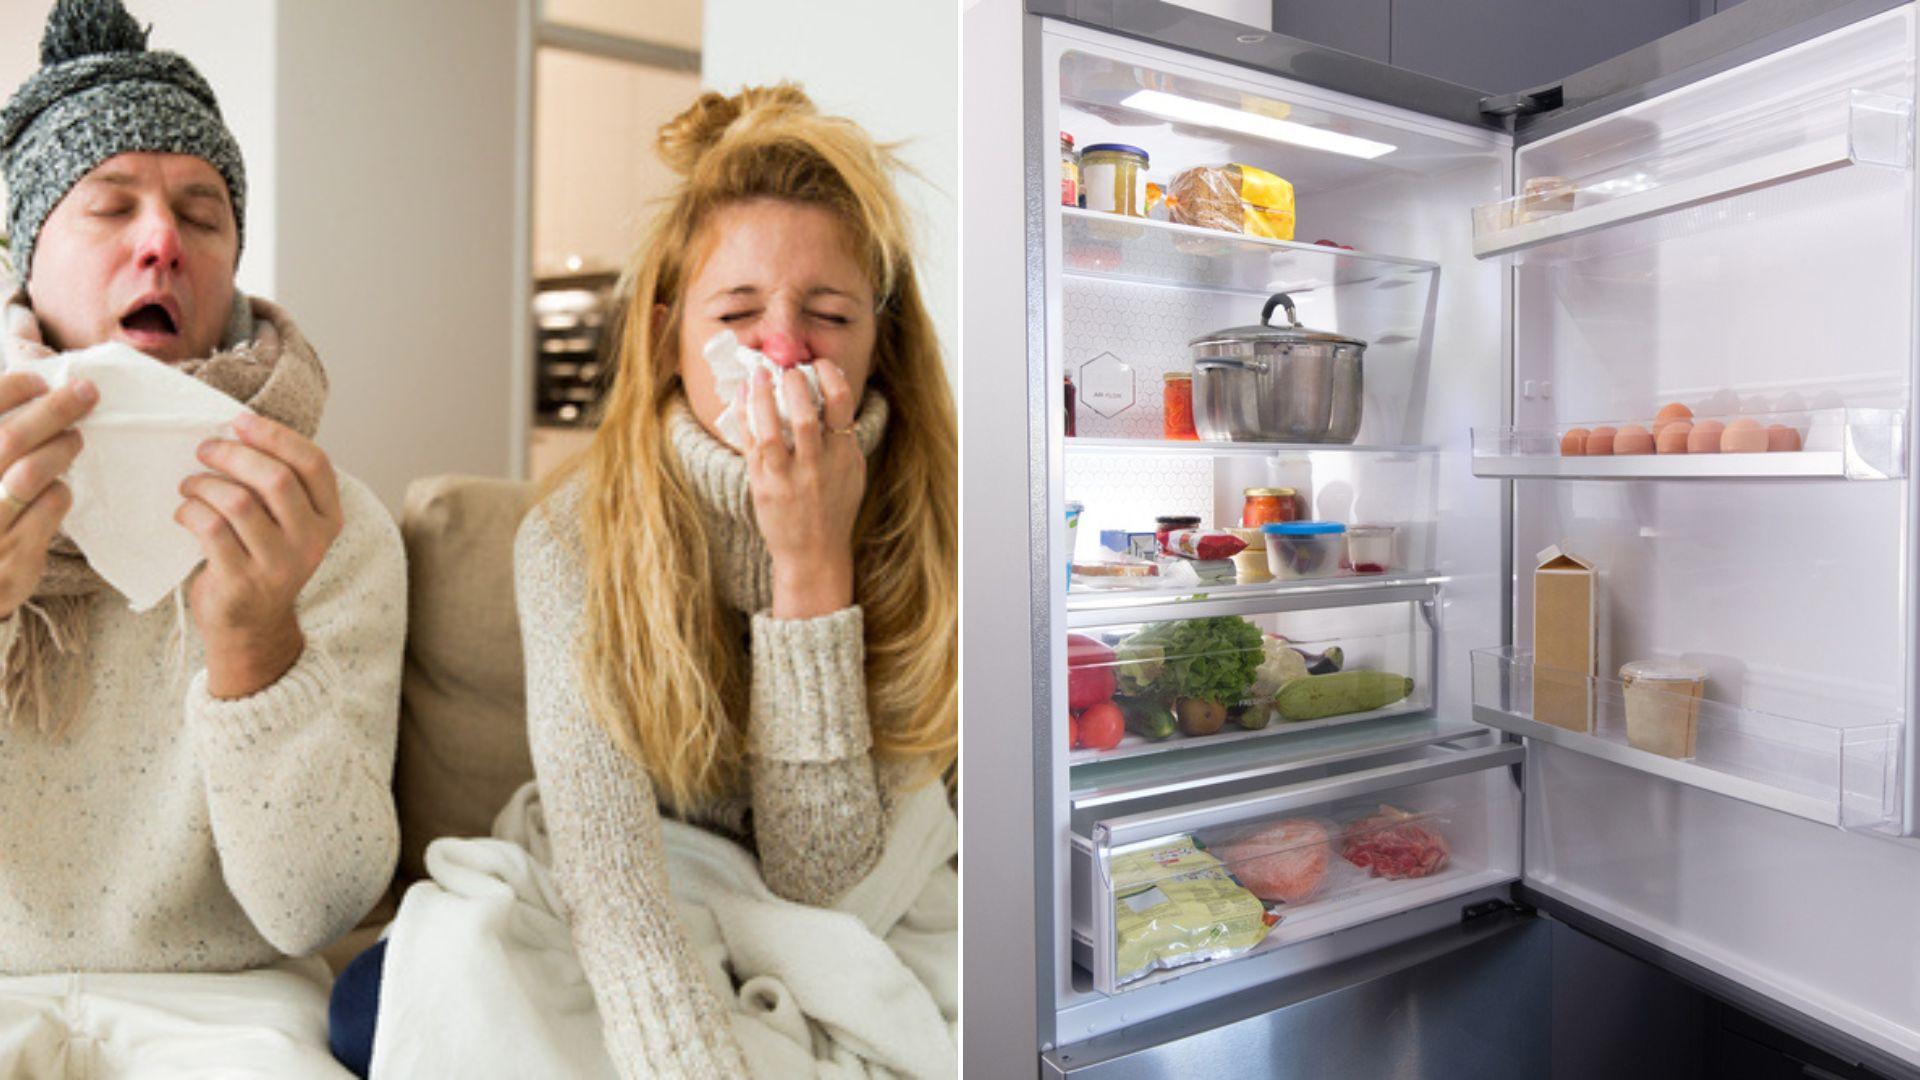 Alimentul pe care e interzis să-l consumi dacă eşti răcit sau ai gripă, conform medicilor. E unul dintre preferatele românilor